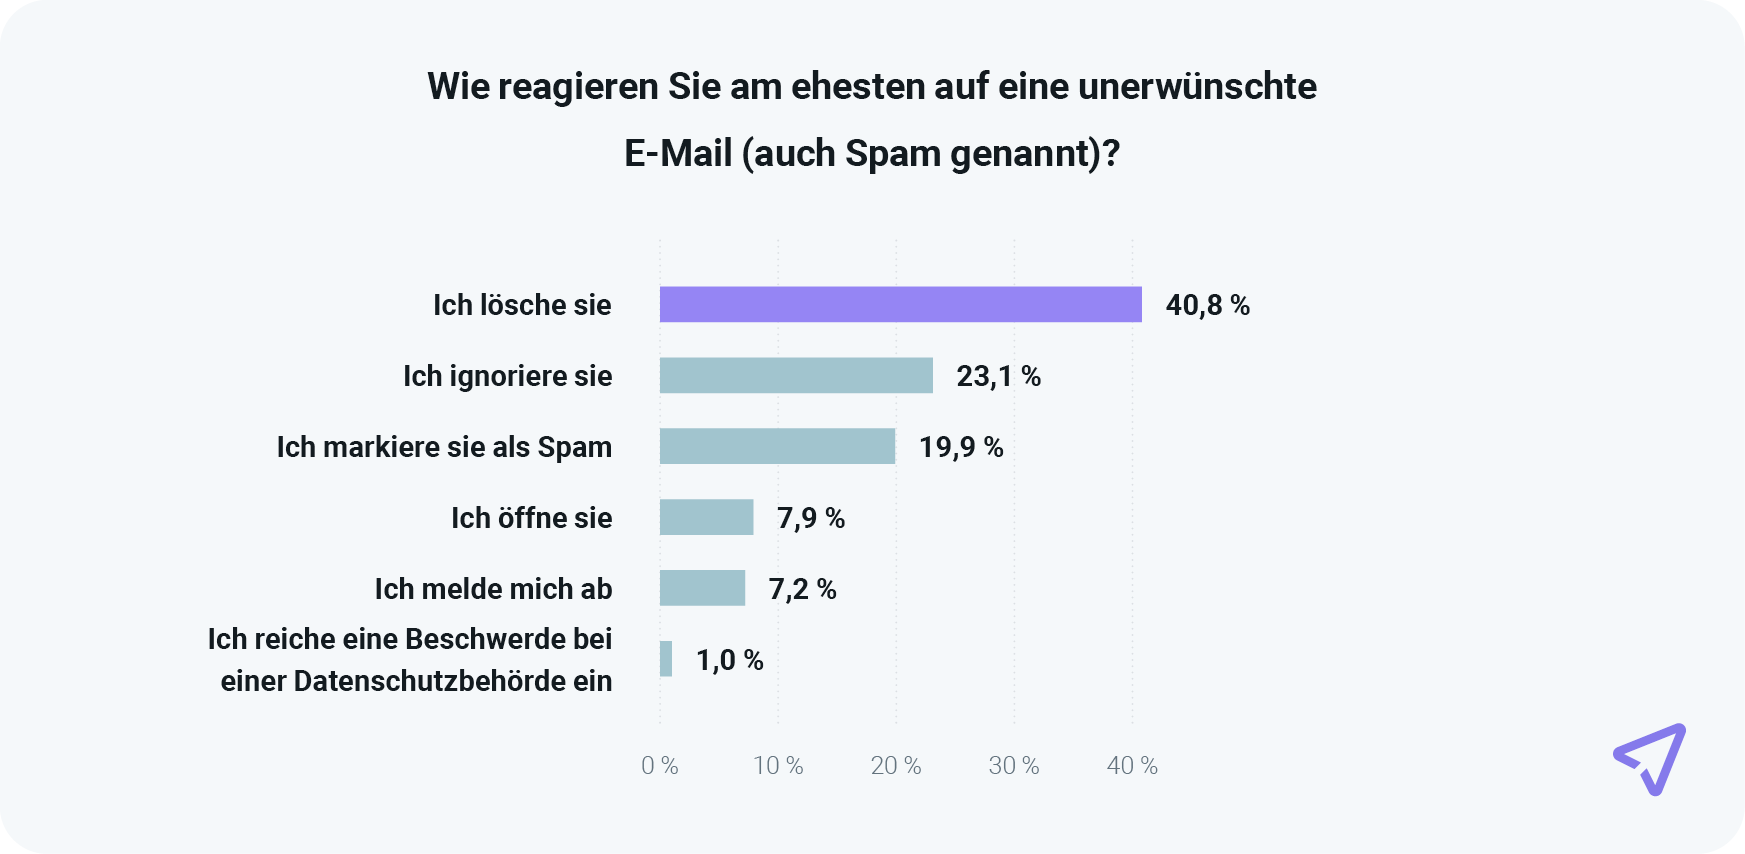 Die Grafik zeigt, dass fast 20 % der Verbraucher unerwünschte E-Mails als Spam markieren